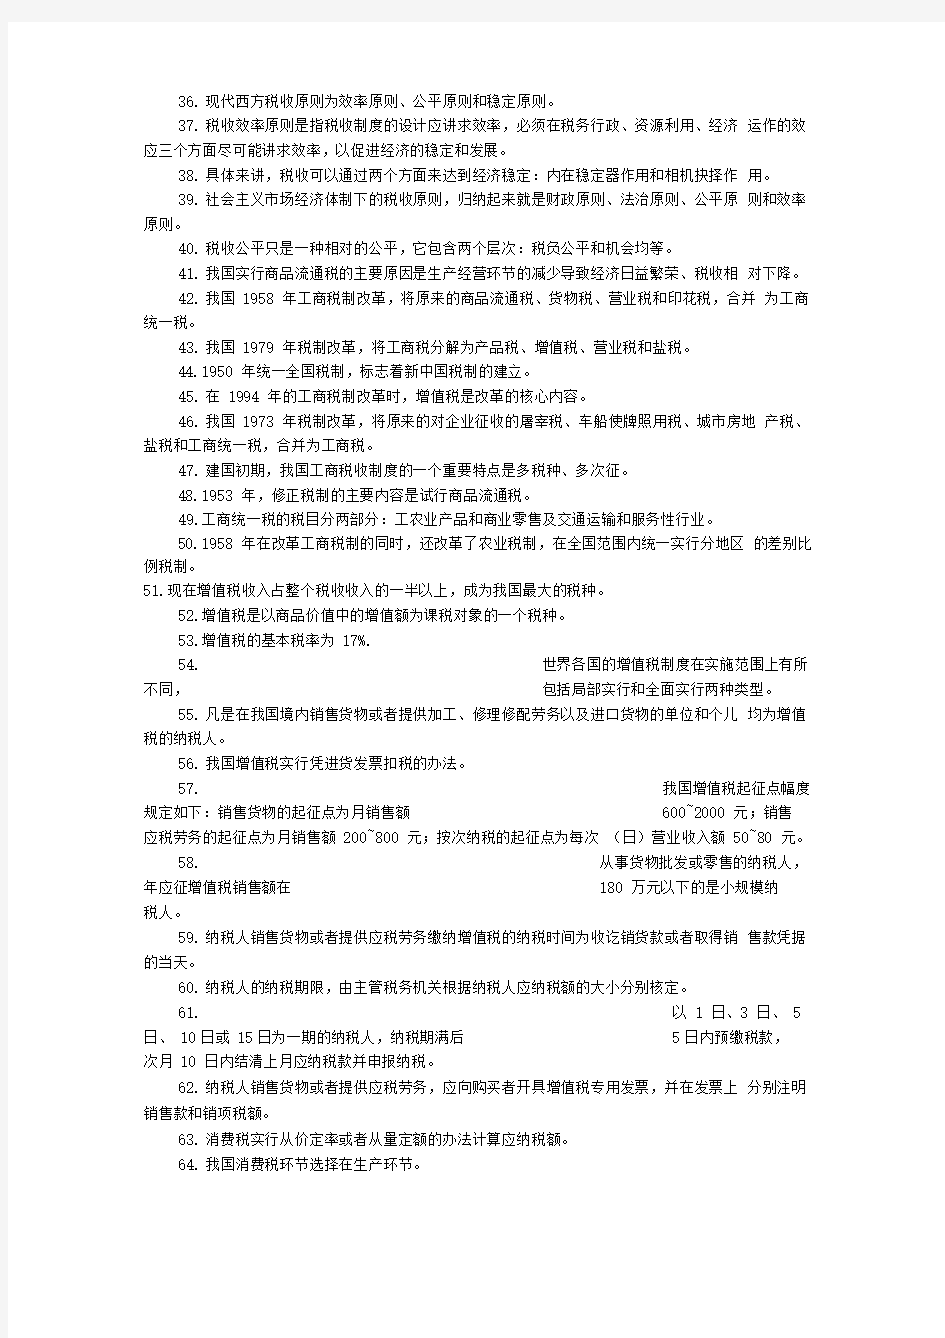 自考《中国税制》课堂笔记整理版